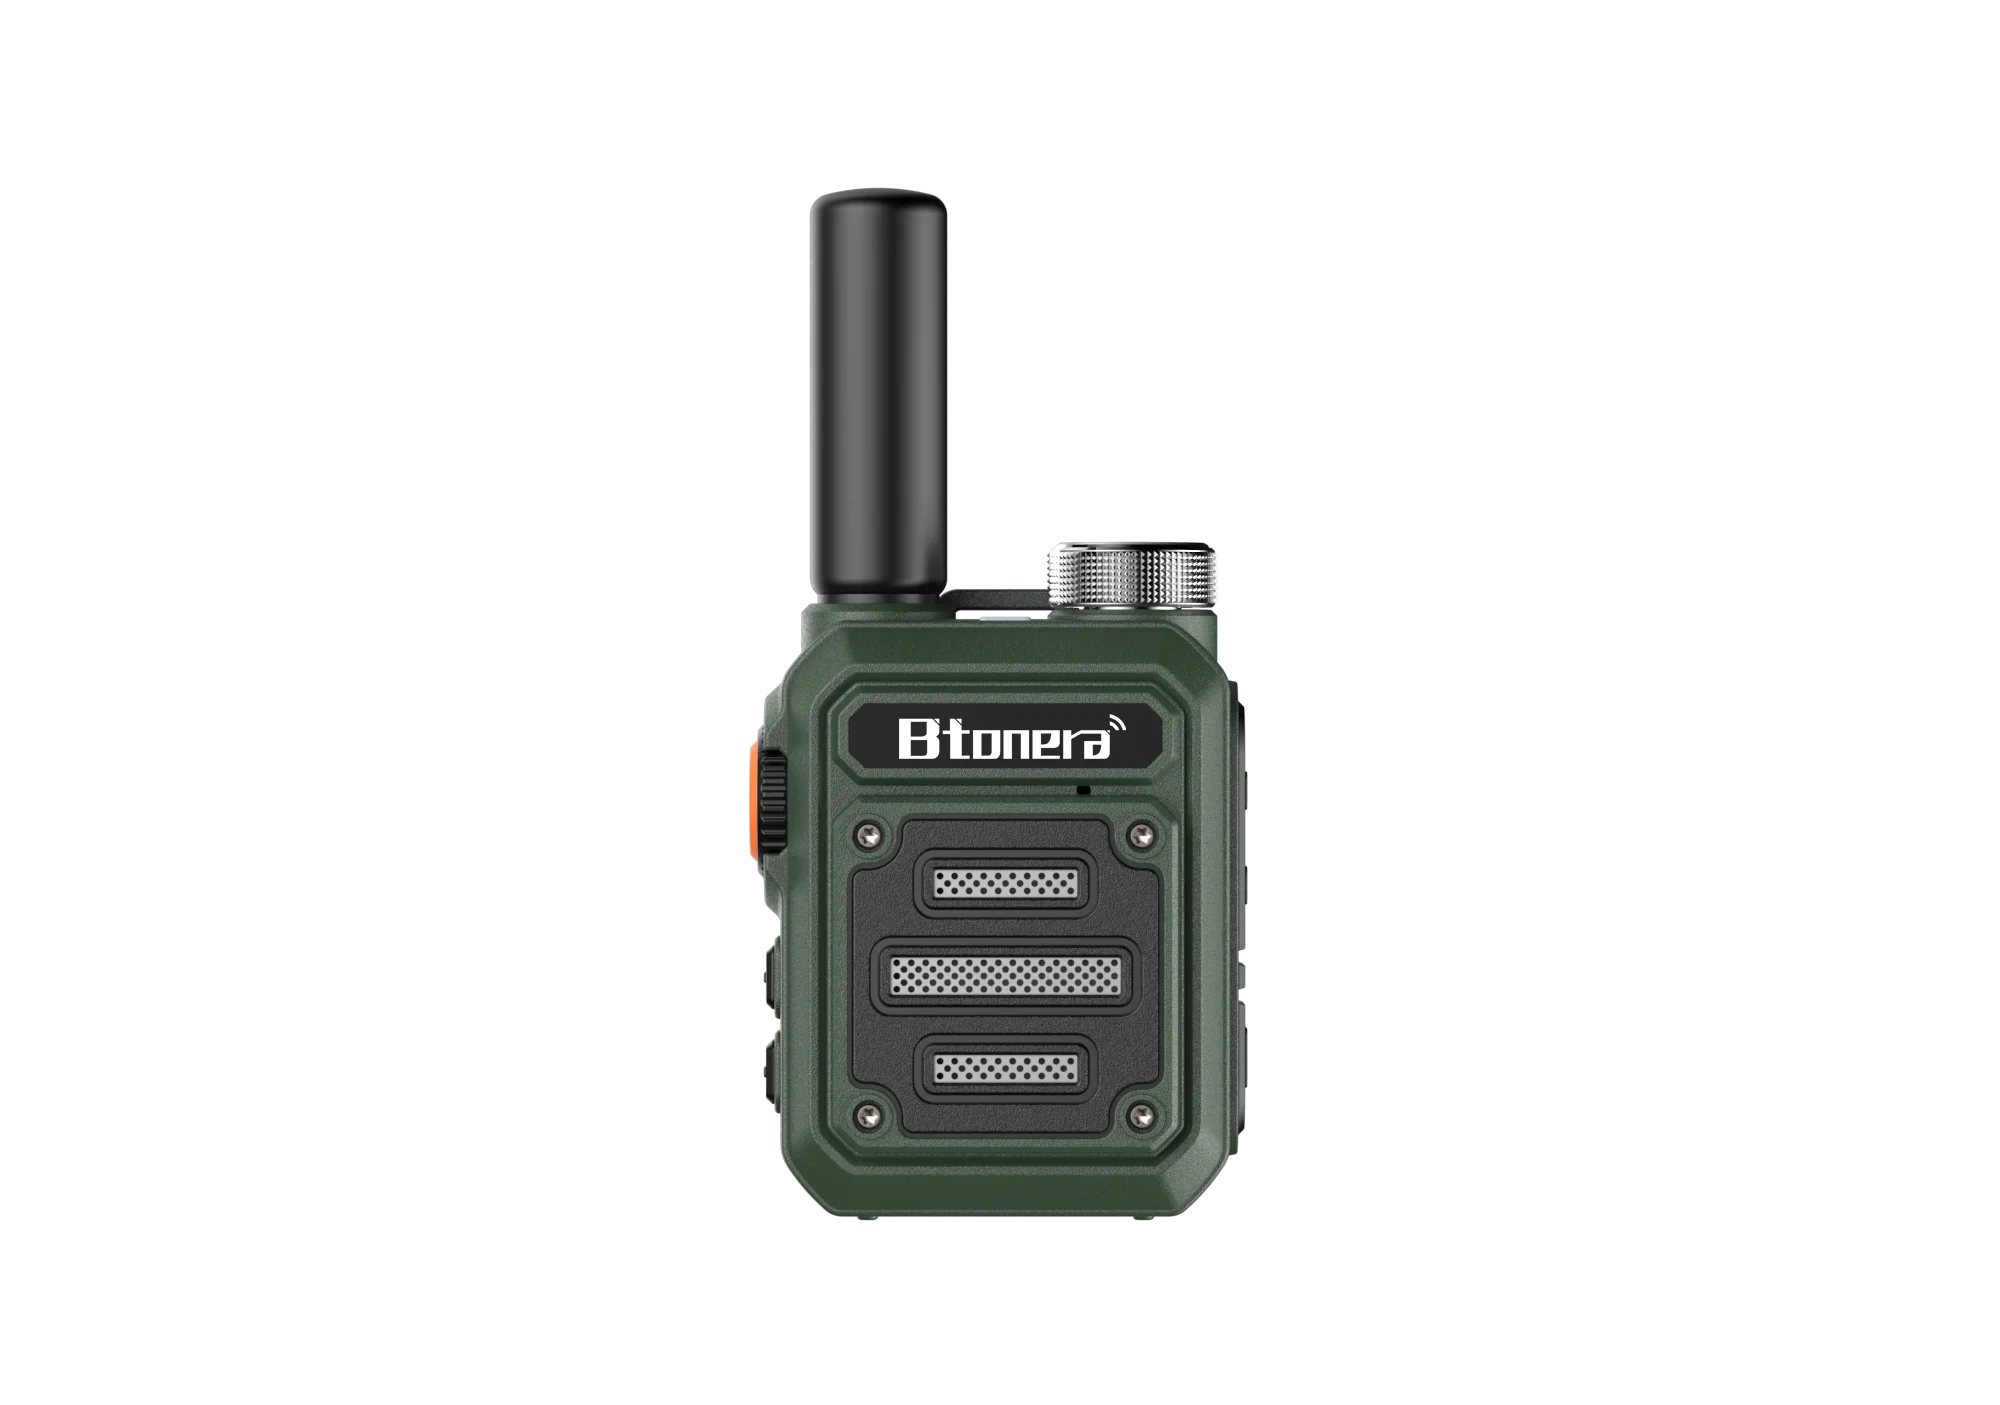 BTONERA-BT-330 portátil Mini Walkie Talkie, PMR 446, USB, rádio bidirecional, walkie-talkies duplos PTT, rádio para caça, café